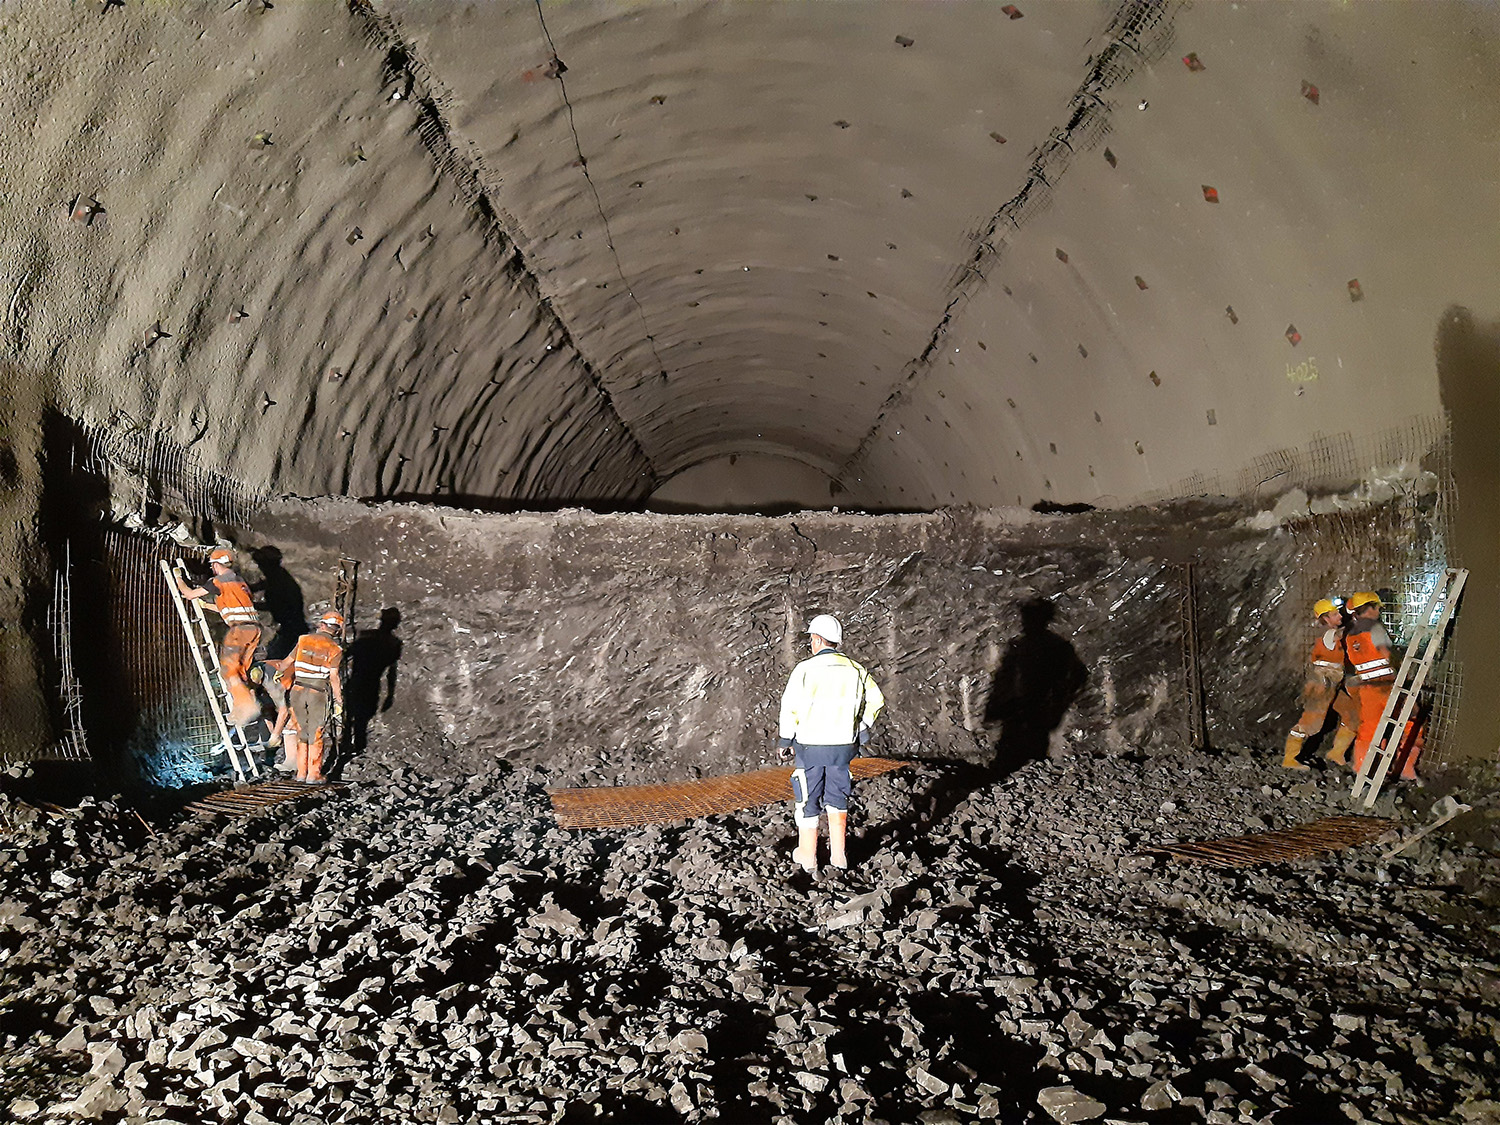 Karawankentunnel, Rosenthal - Tunnelkonstruksjon